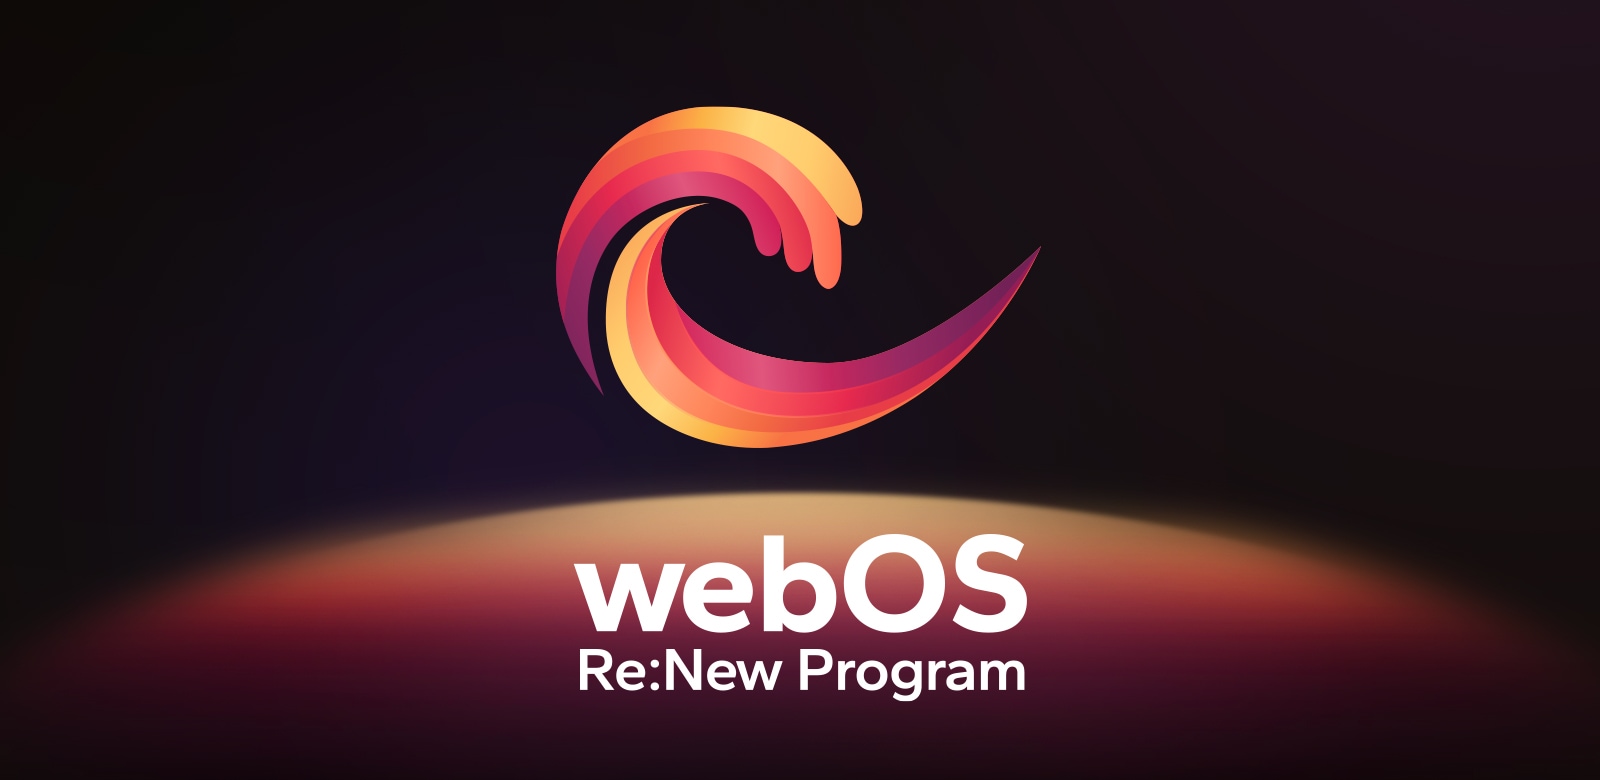 Логотип программы webOS Re:New Program на черном фоне с желто-оранжево-фиолетовой круглой сферой внизу. 